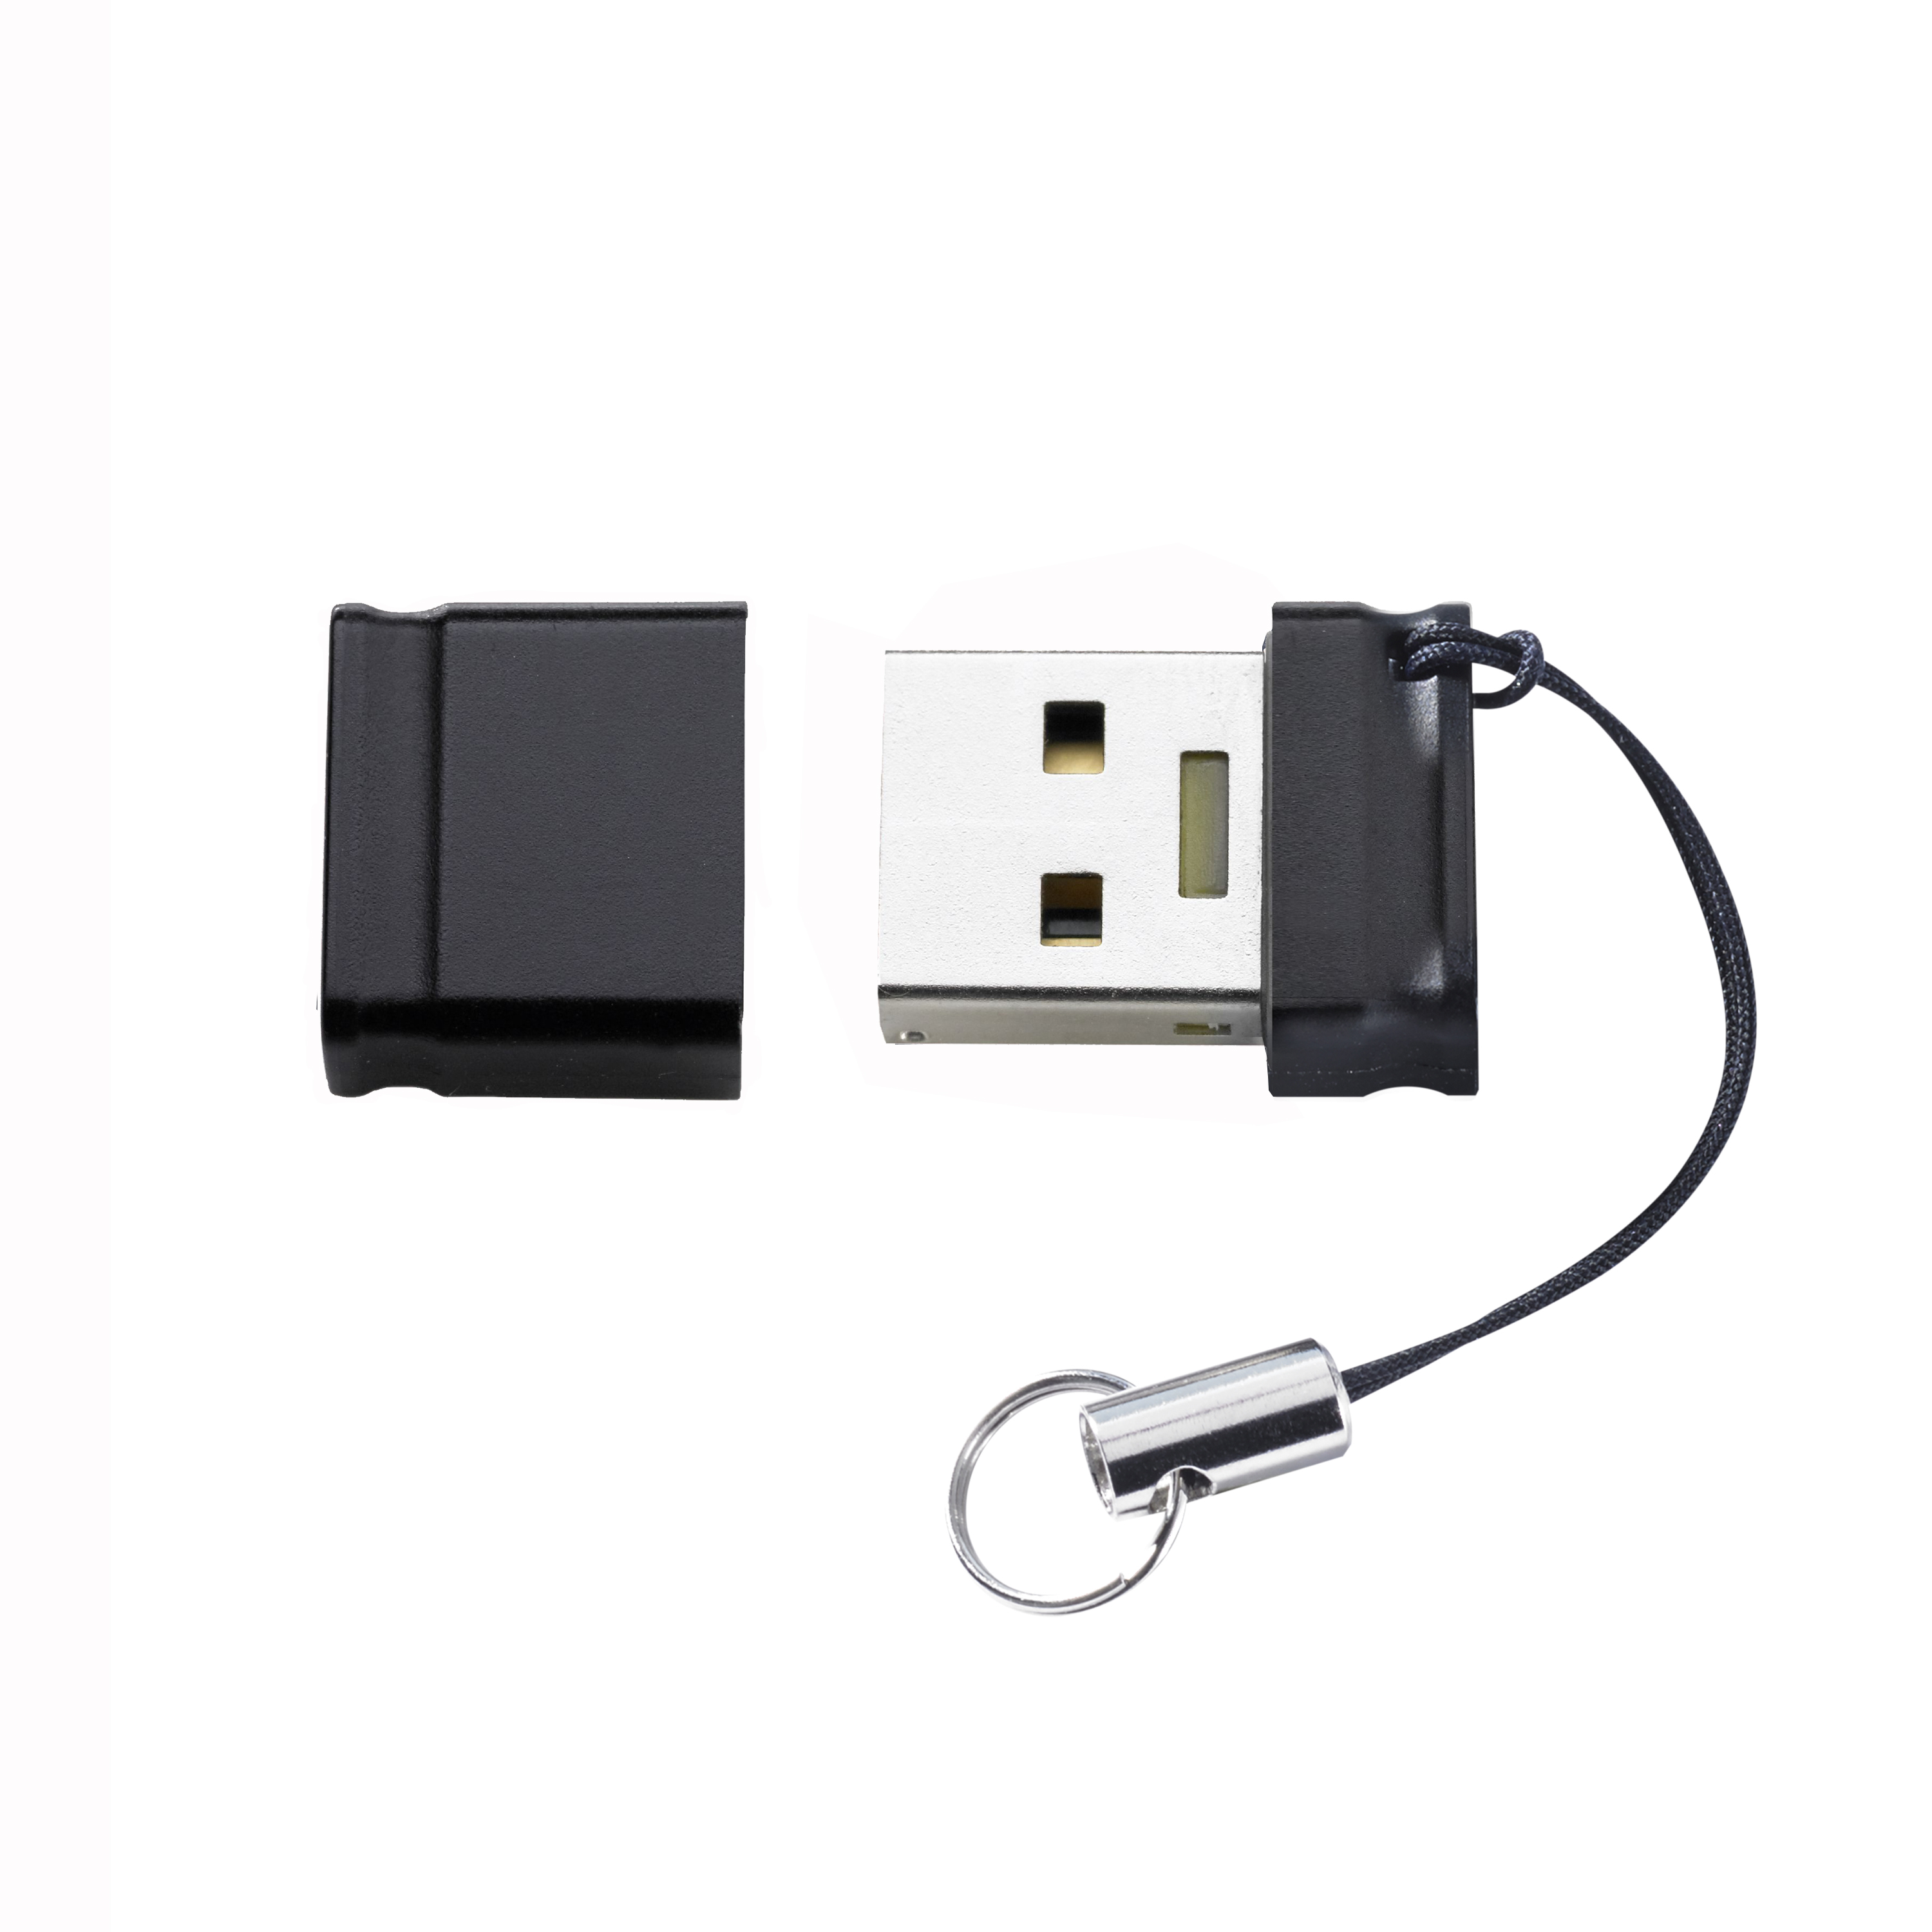 USB-Stick GB INTENSO 128 Slim (Schwarz, 128 GB) Line